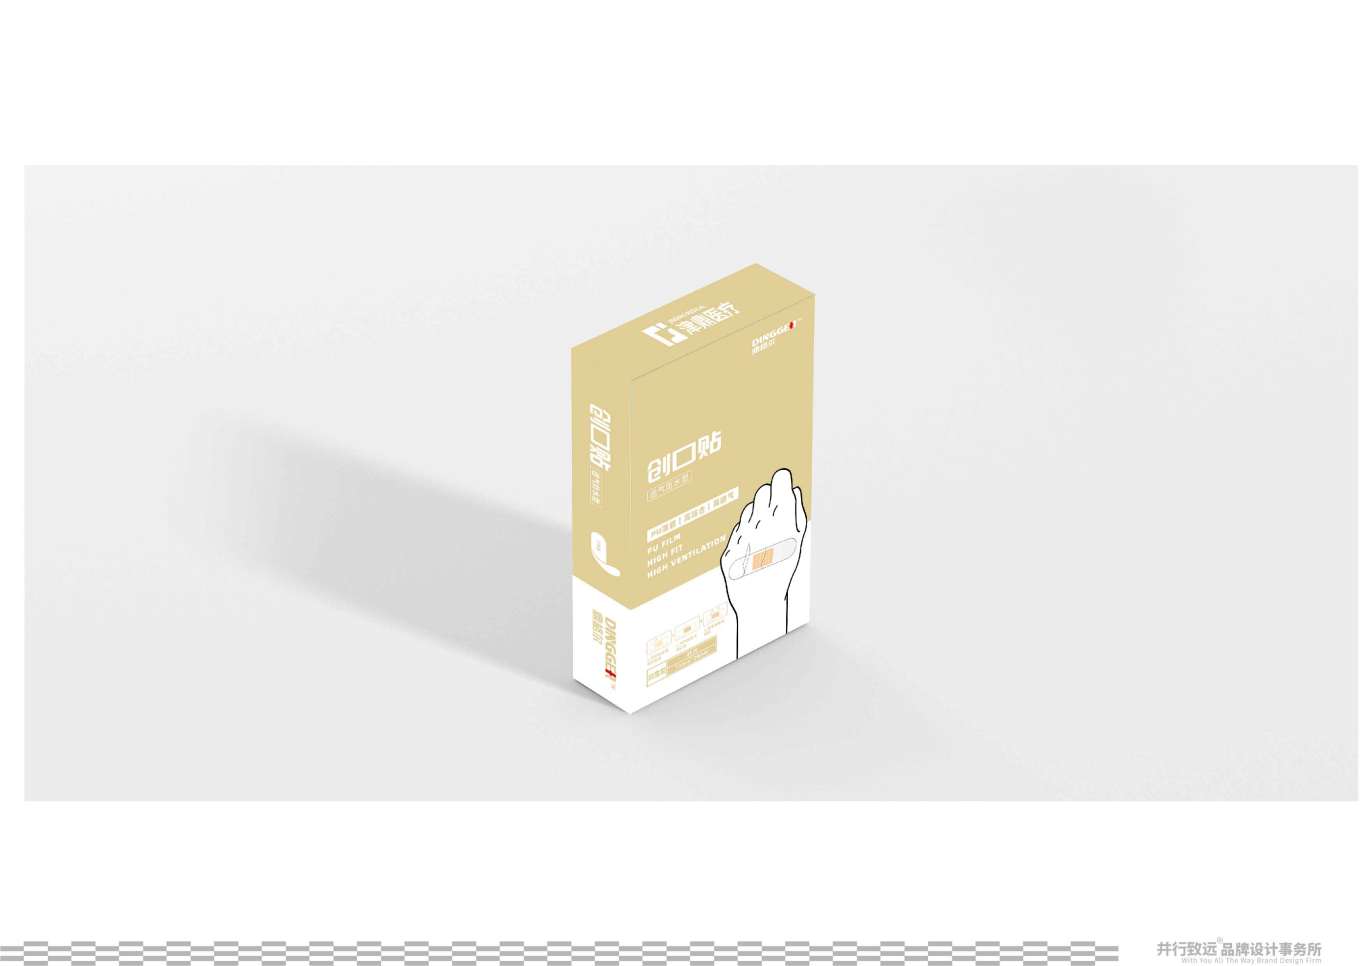 鼎格尔品牌创口贴系列包装设计图1